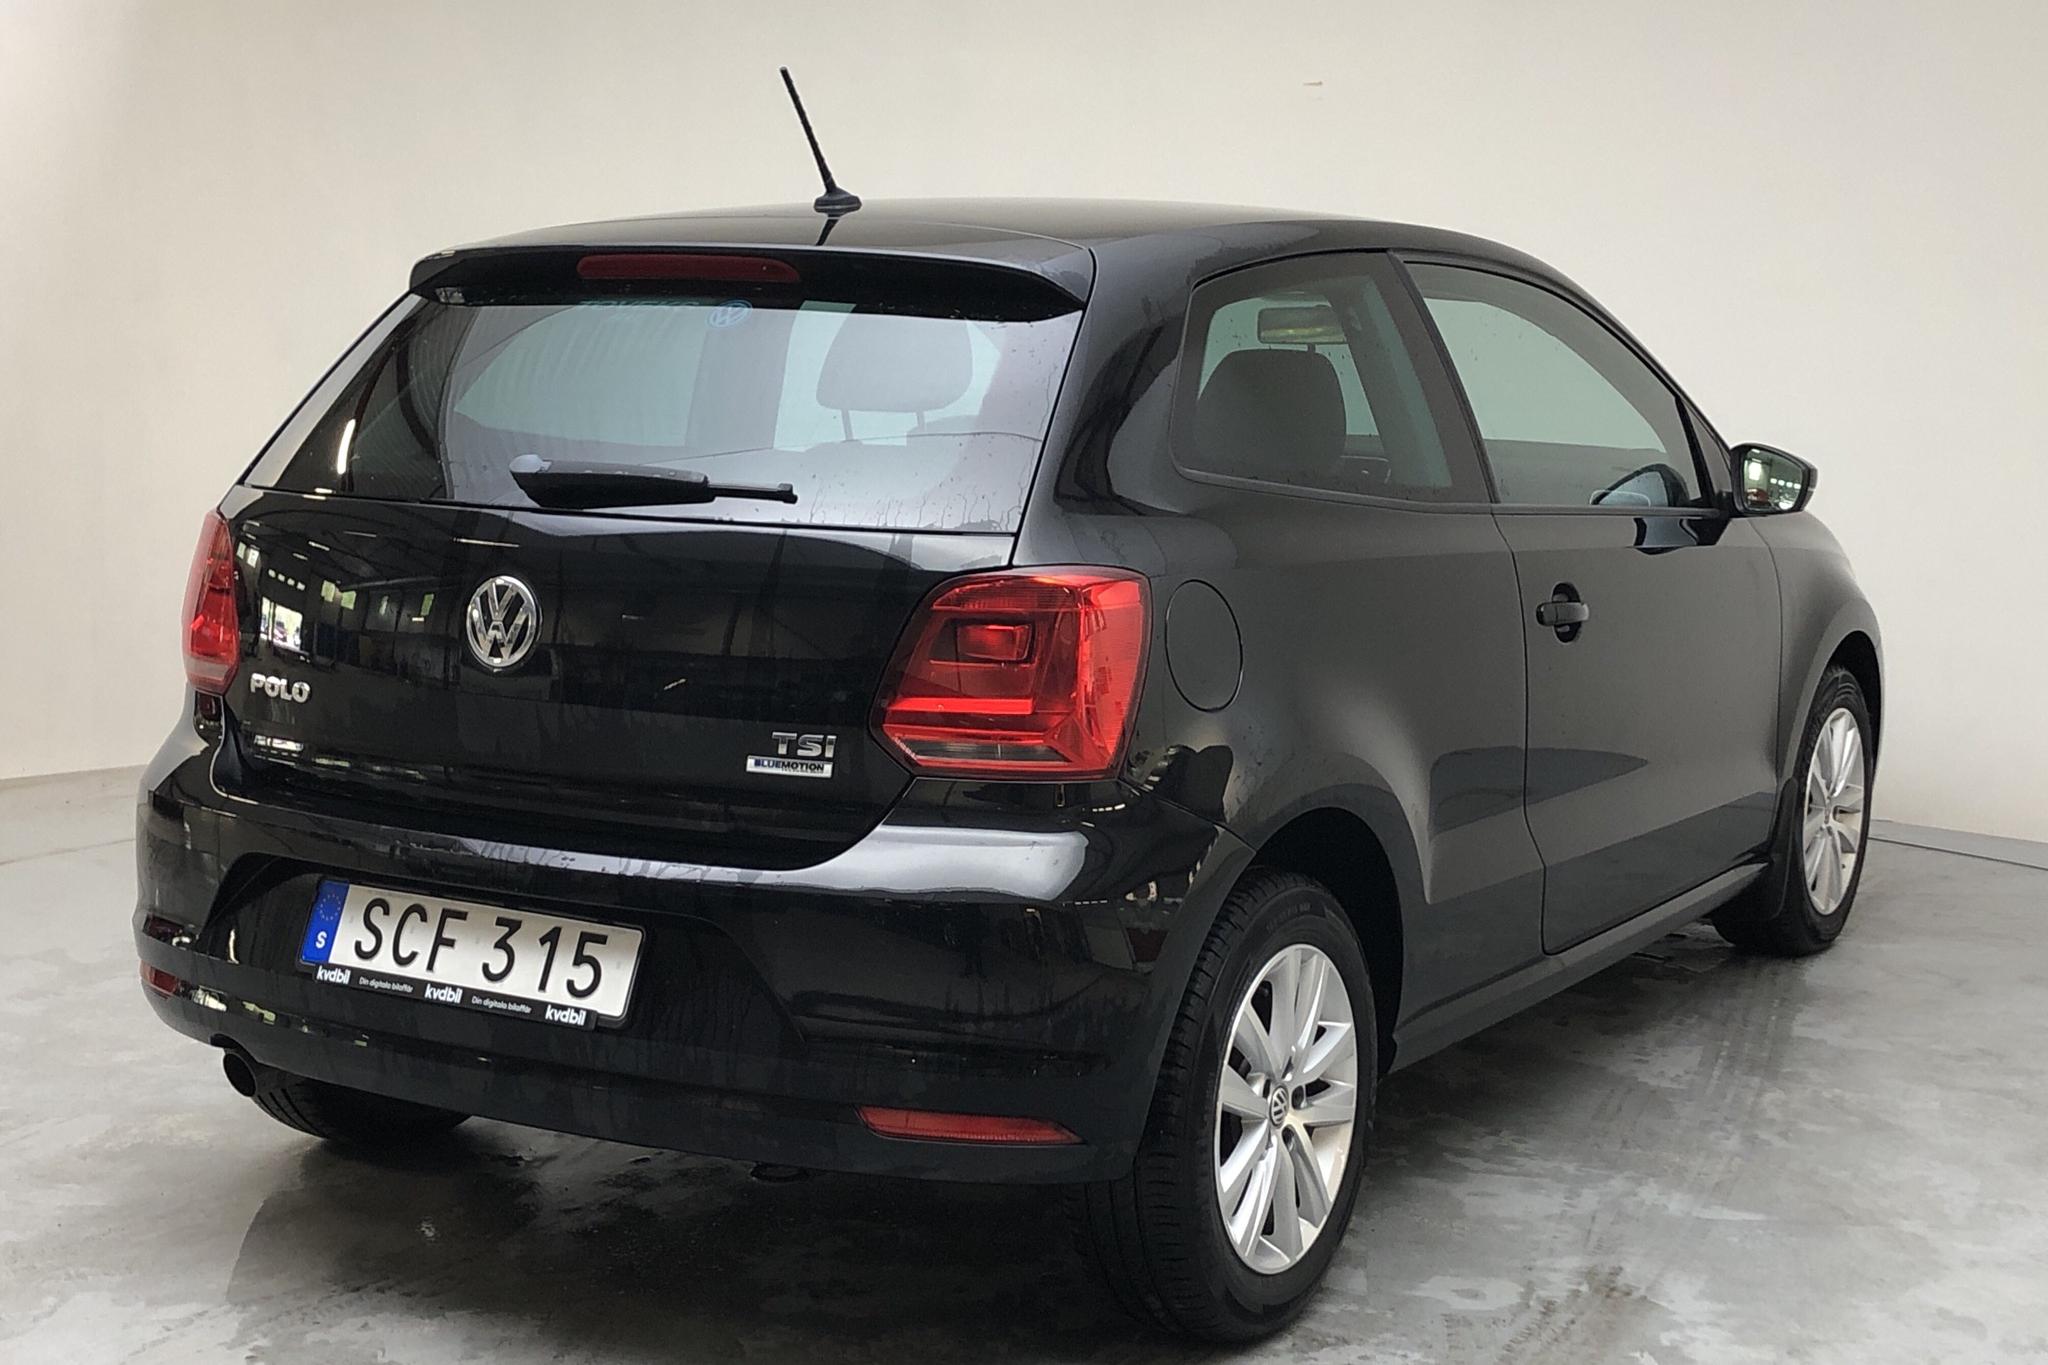 VW Polo 1.2 TSI 5dr (90hk) - 26 140 km - Automatic - black - 2017